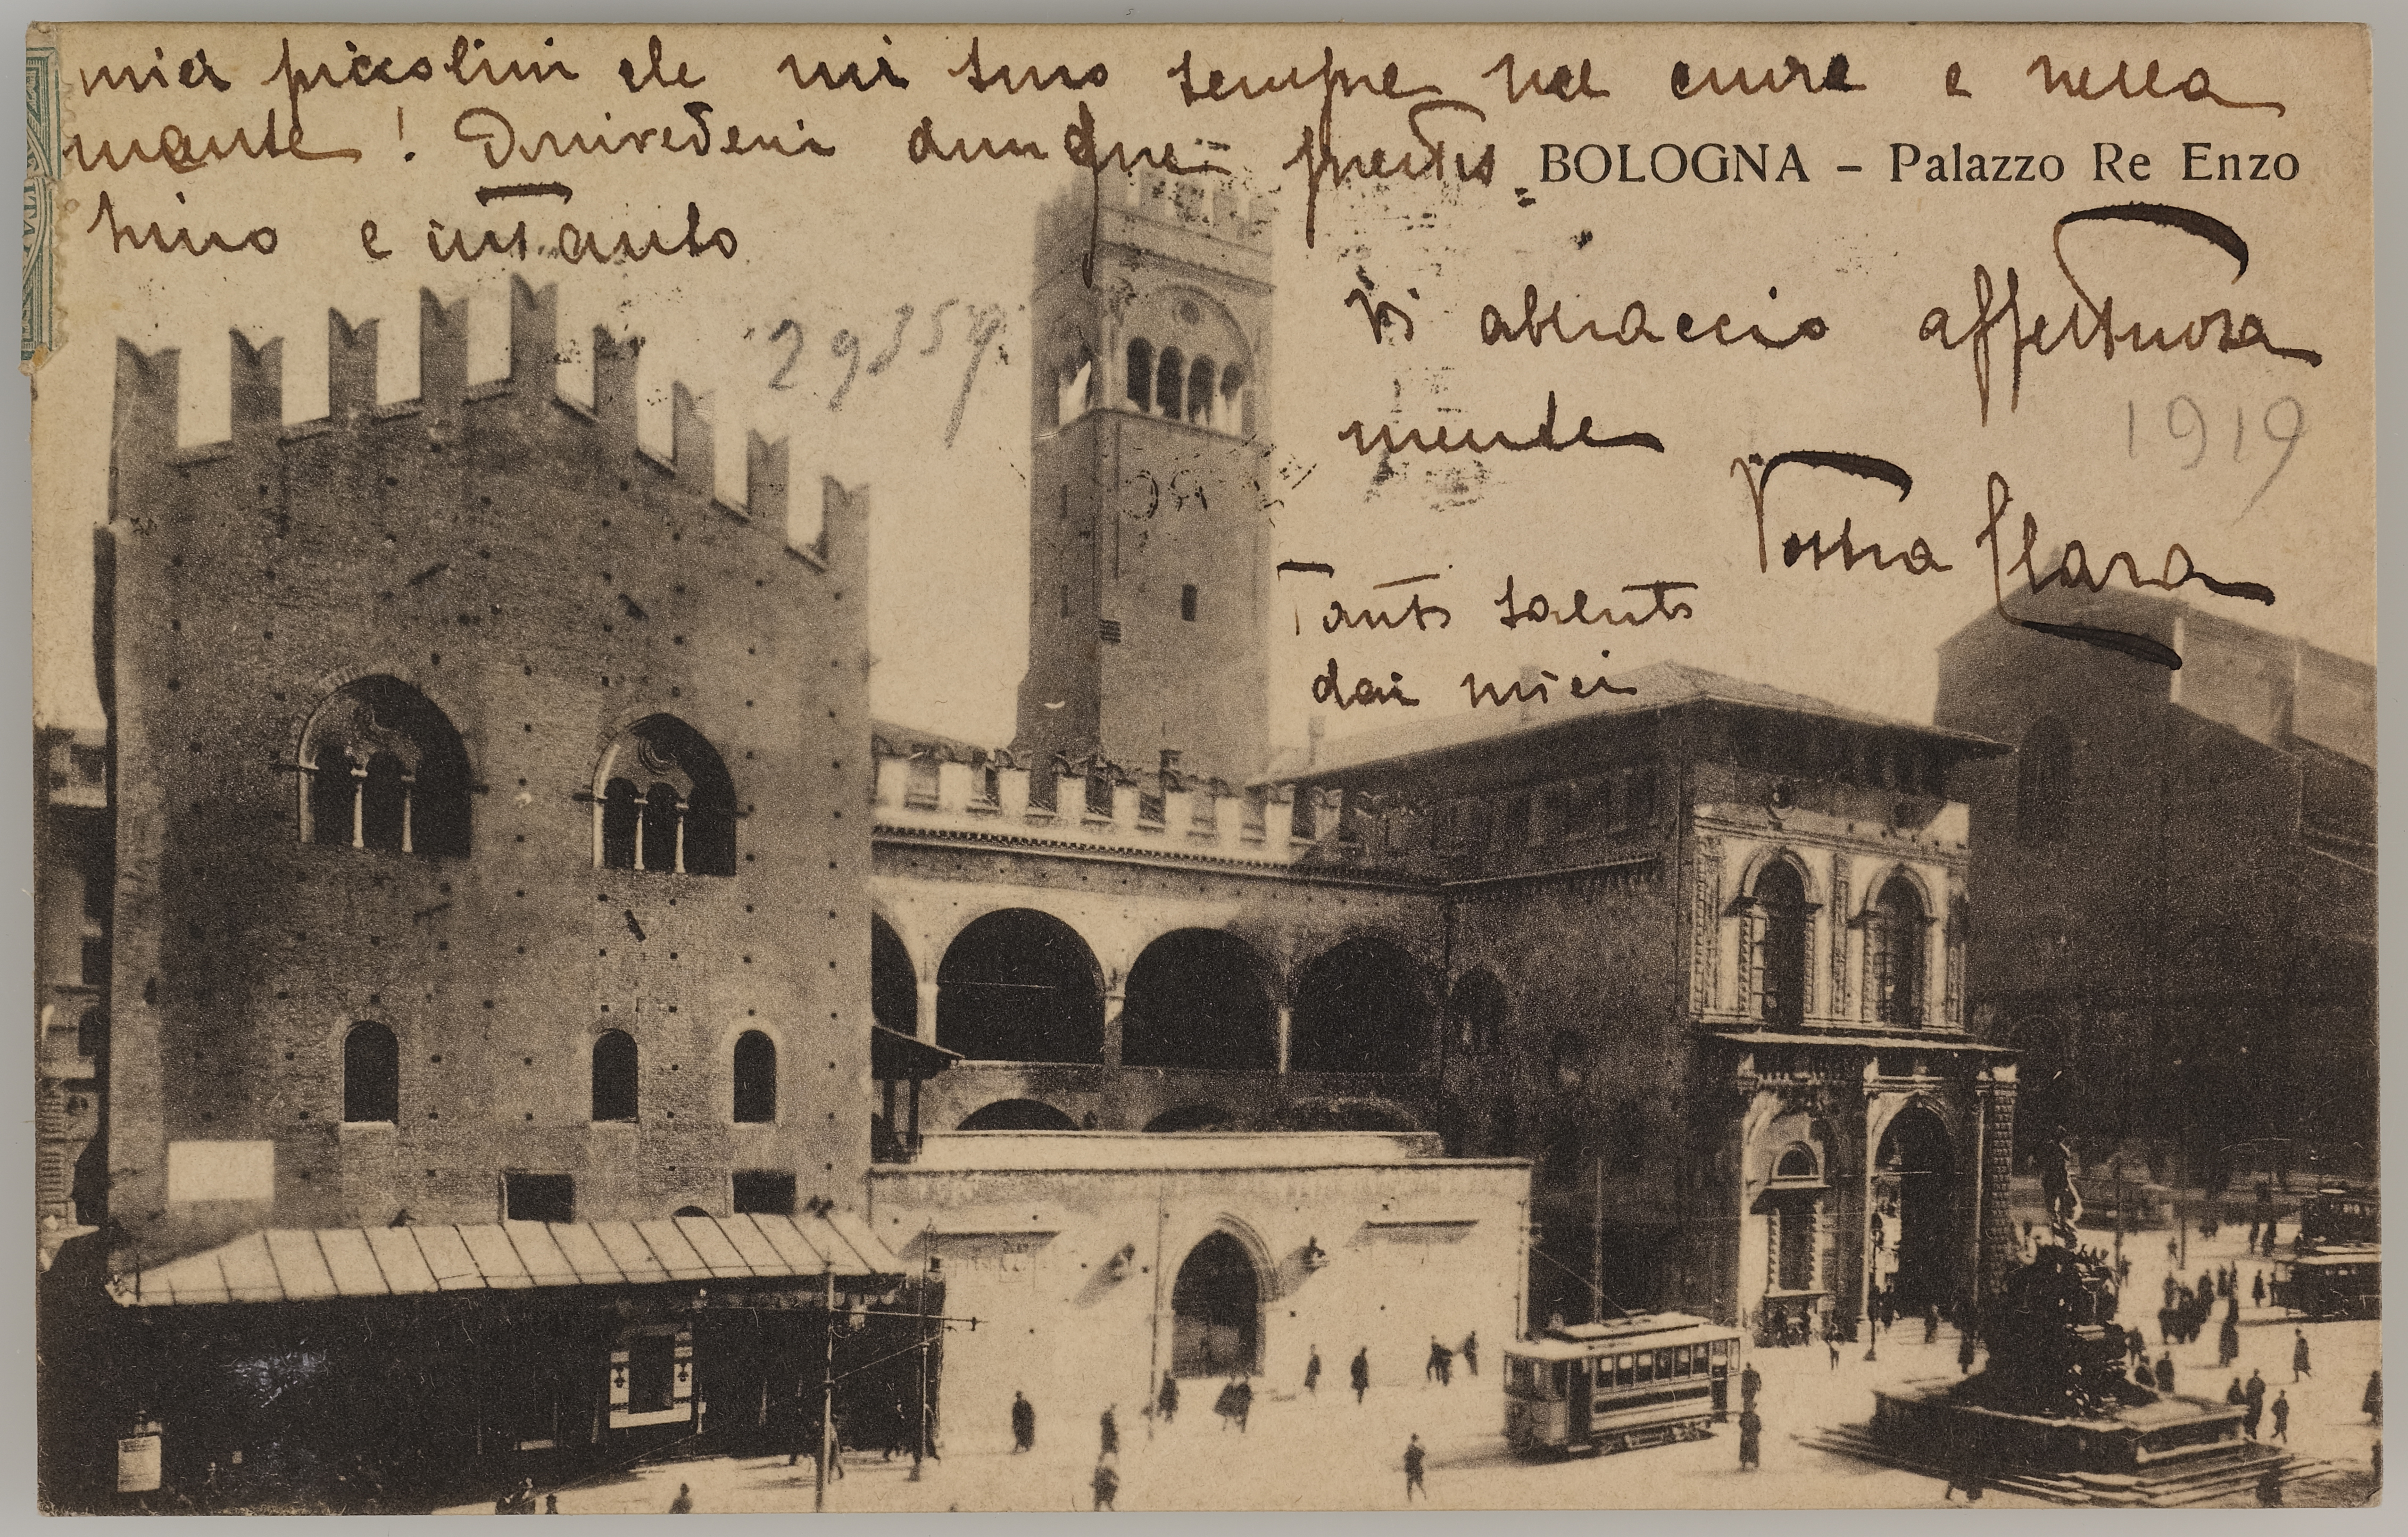 Fotografo non identificato, Bologna - Palazzo Re Enzo, 1919, stampa fotomeccanica/ cartolina postale, DVC000192